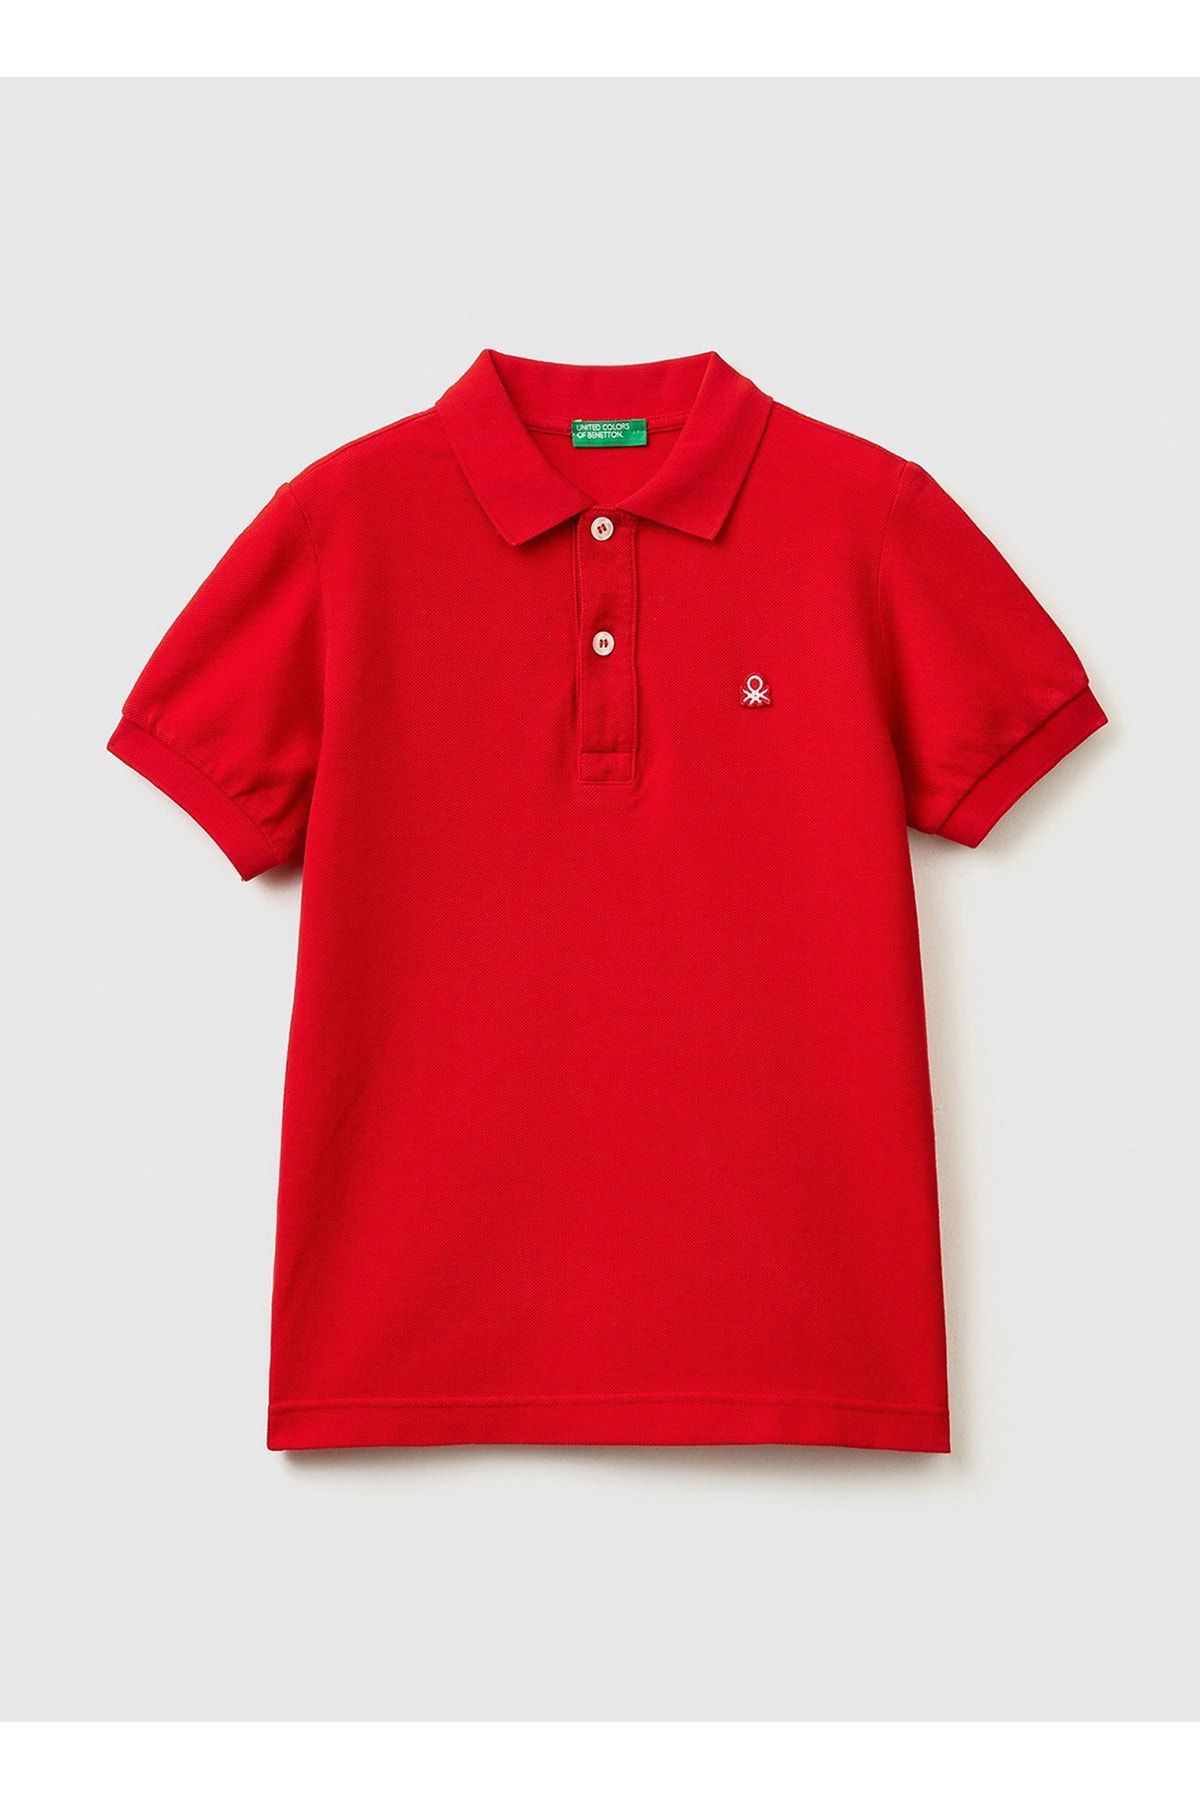 Benetton Düz Kırmızı Erkek Çocuk Polo T-Shirt 3089C300Q